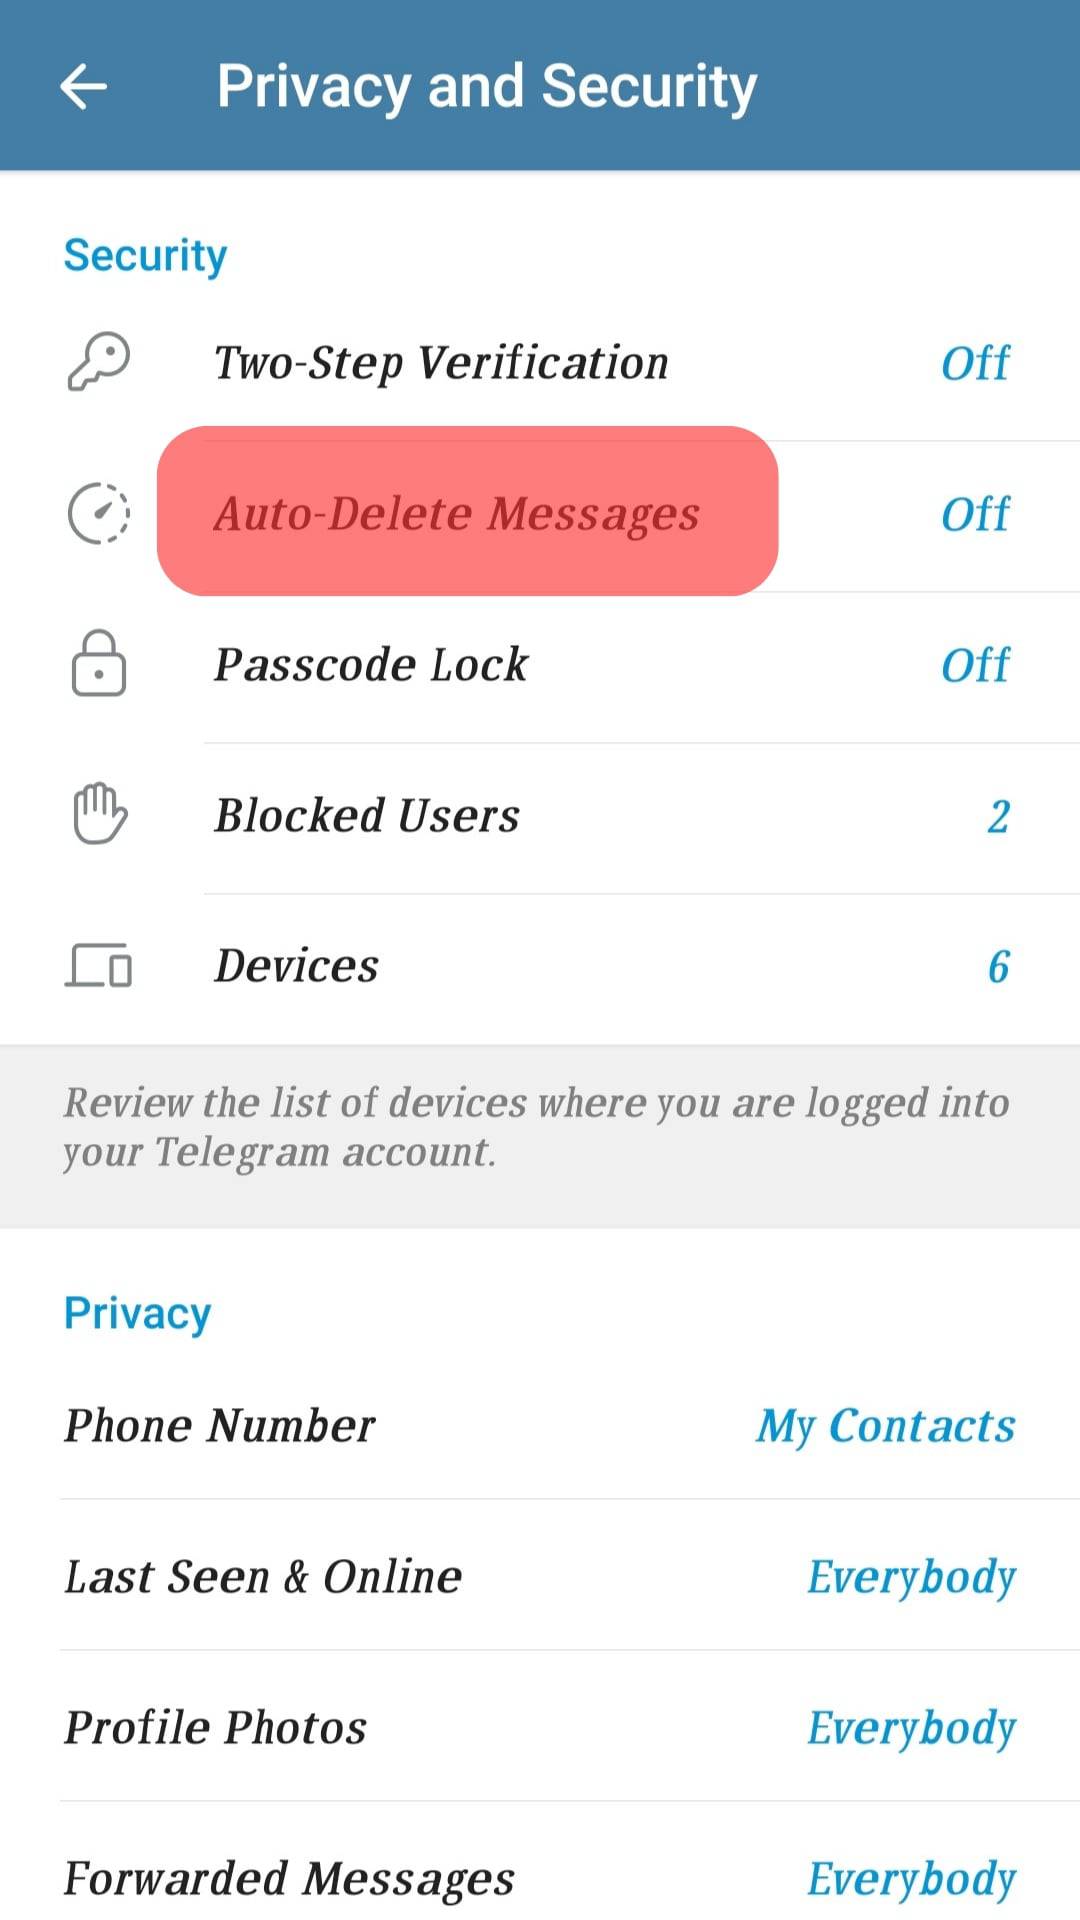 Select Auto-Delete Messages.